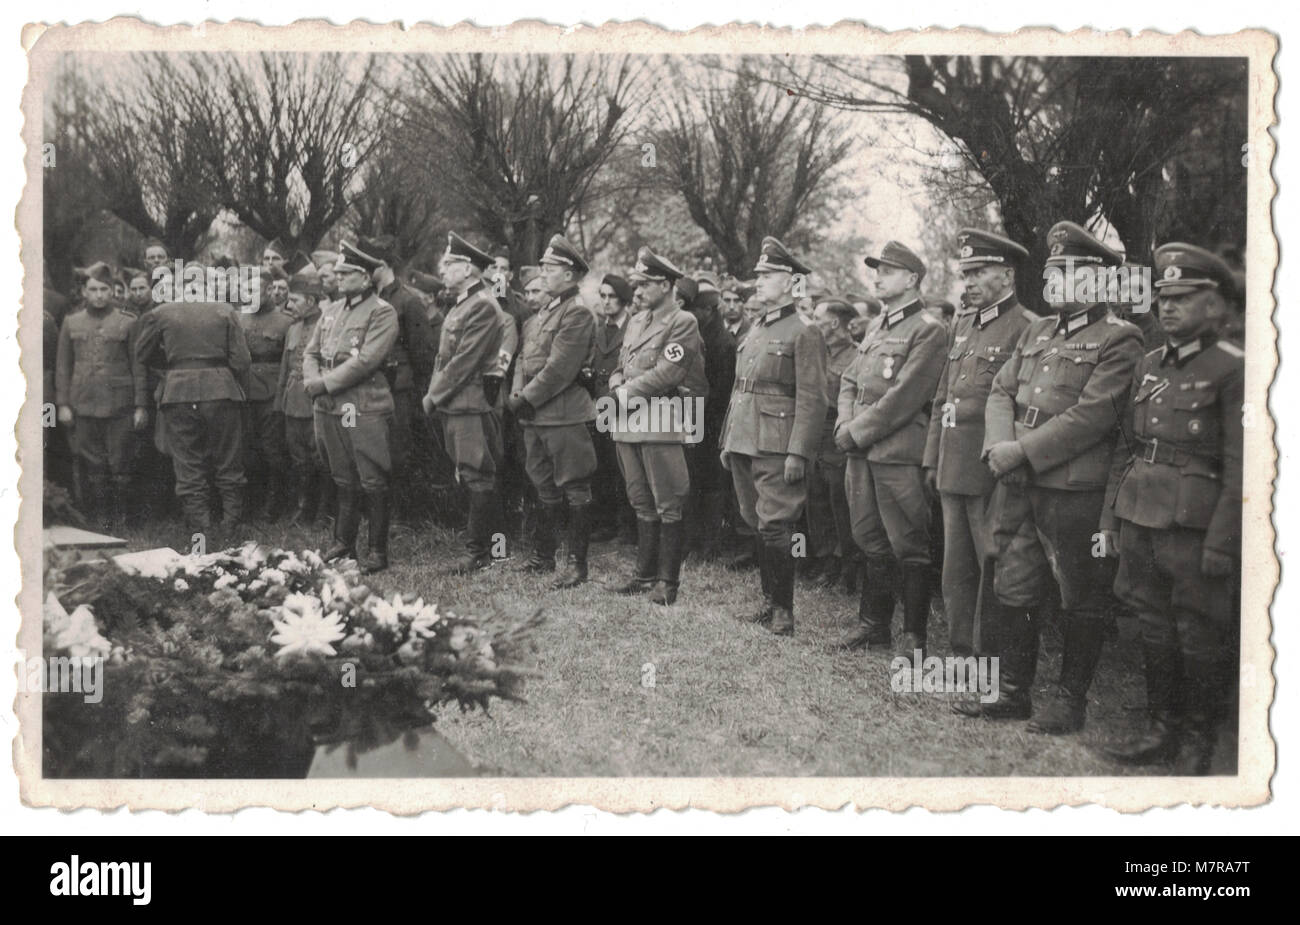 Entierro, entierro masivo de tropas británicas en un cementerio cerca de Leipzig en Alemania el 27 de febrero de 1945, durante la Segunda Guerra Mundial, las fotografías son todas estampado en el reverso con Stalag IV-A, campamento de prisioneros de guerra Foto de stock